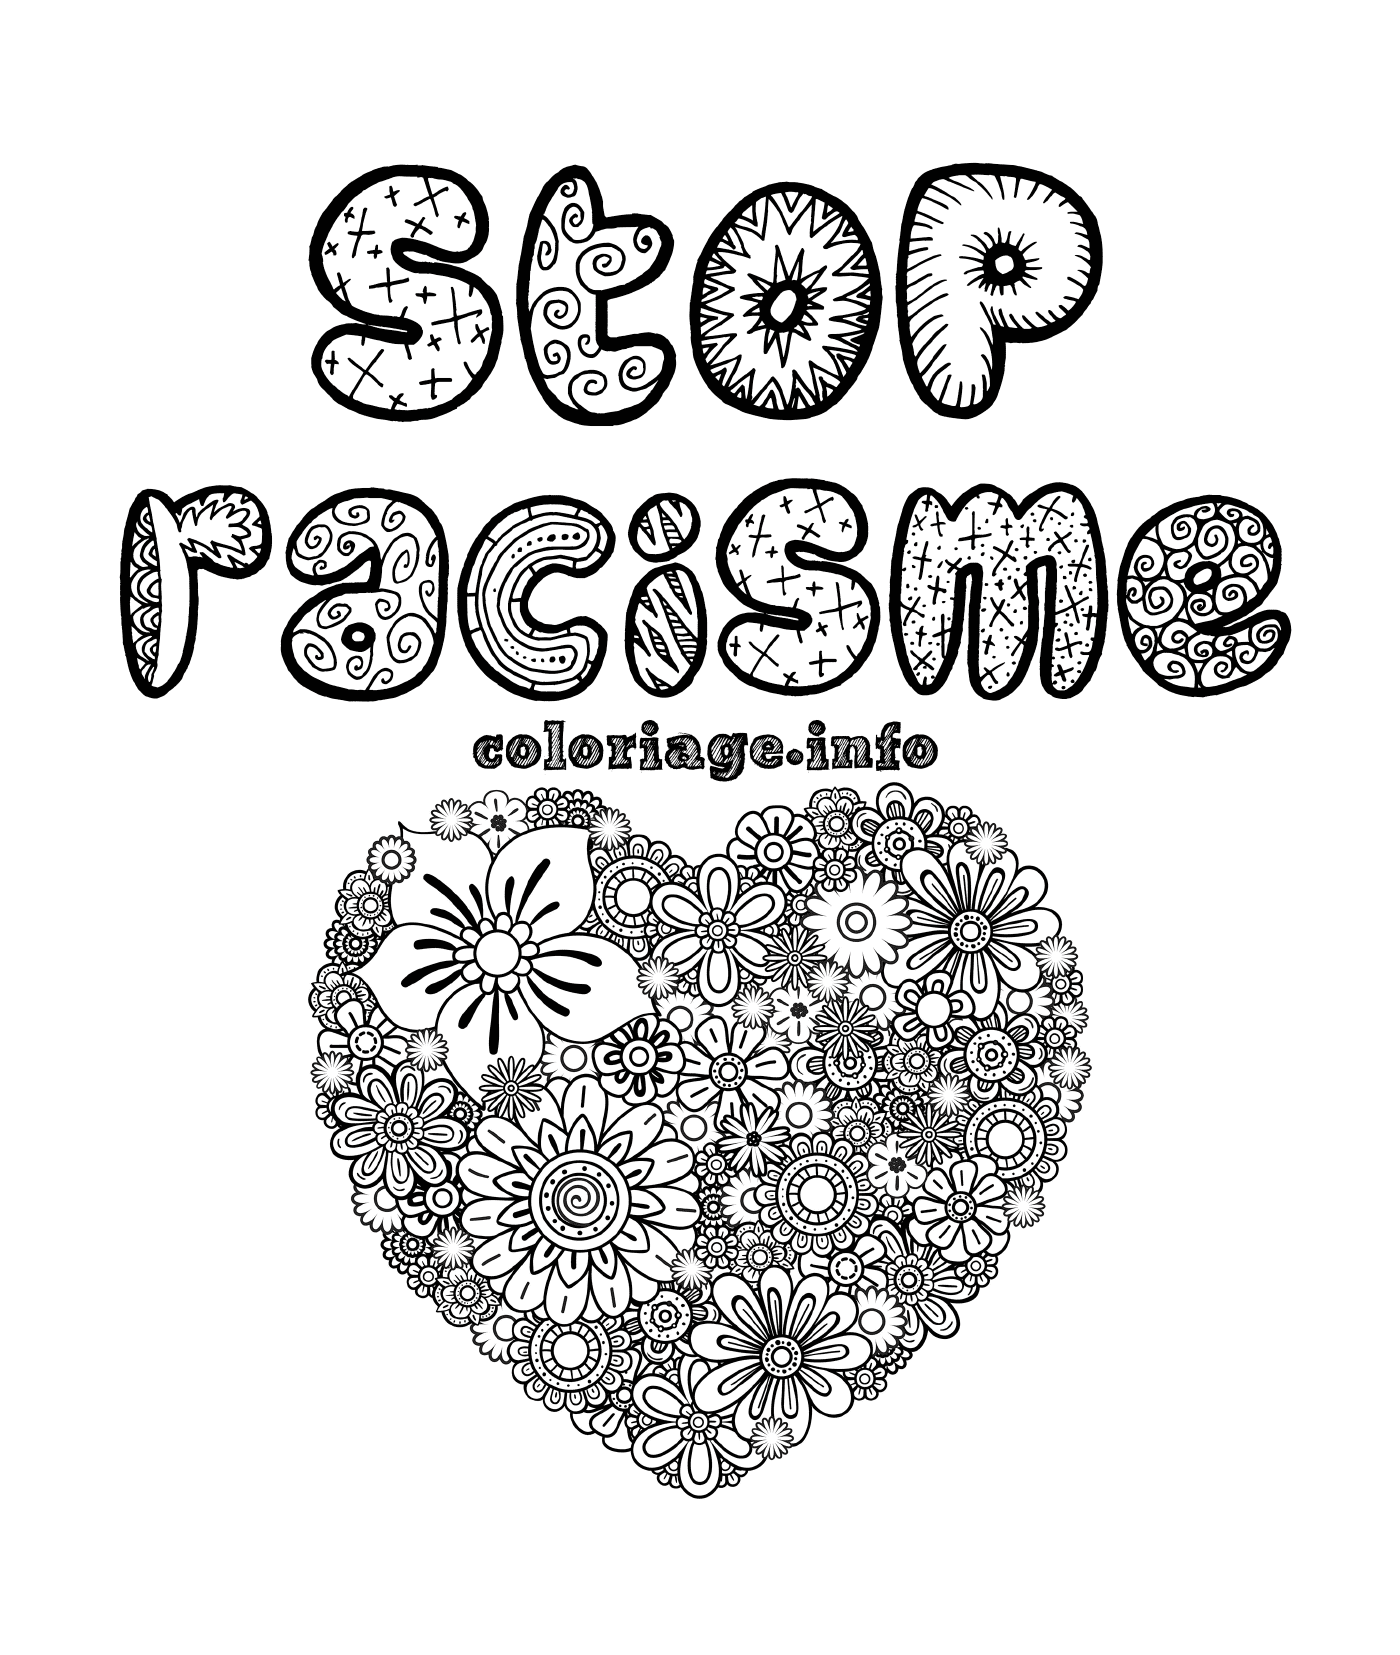  Detener el racismo, corazón mandala 